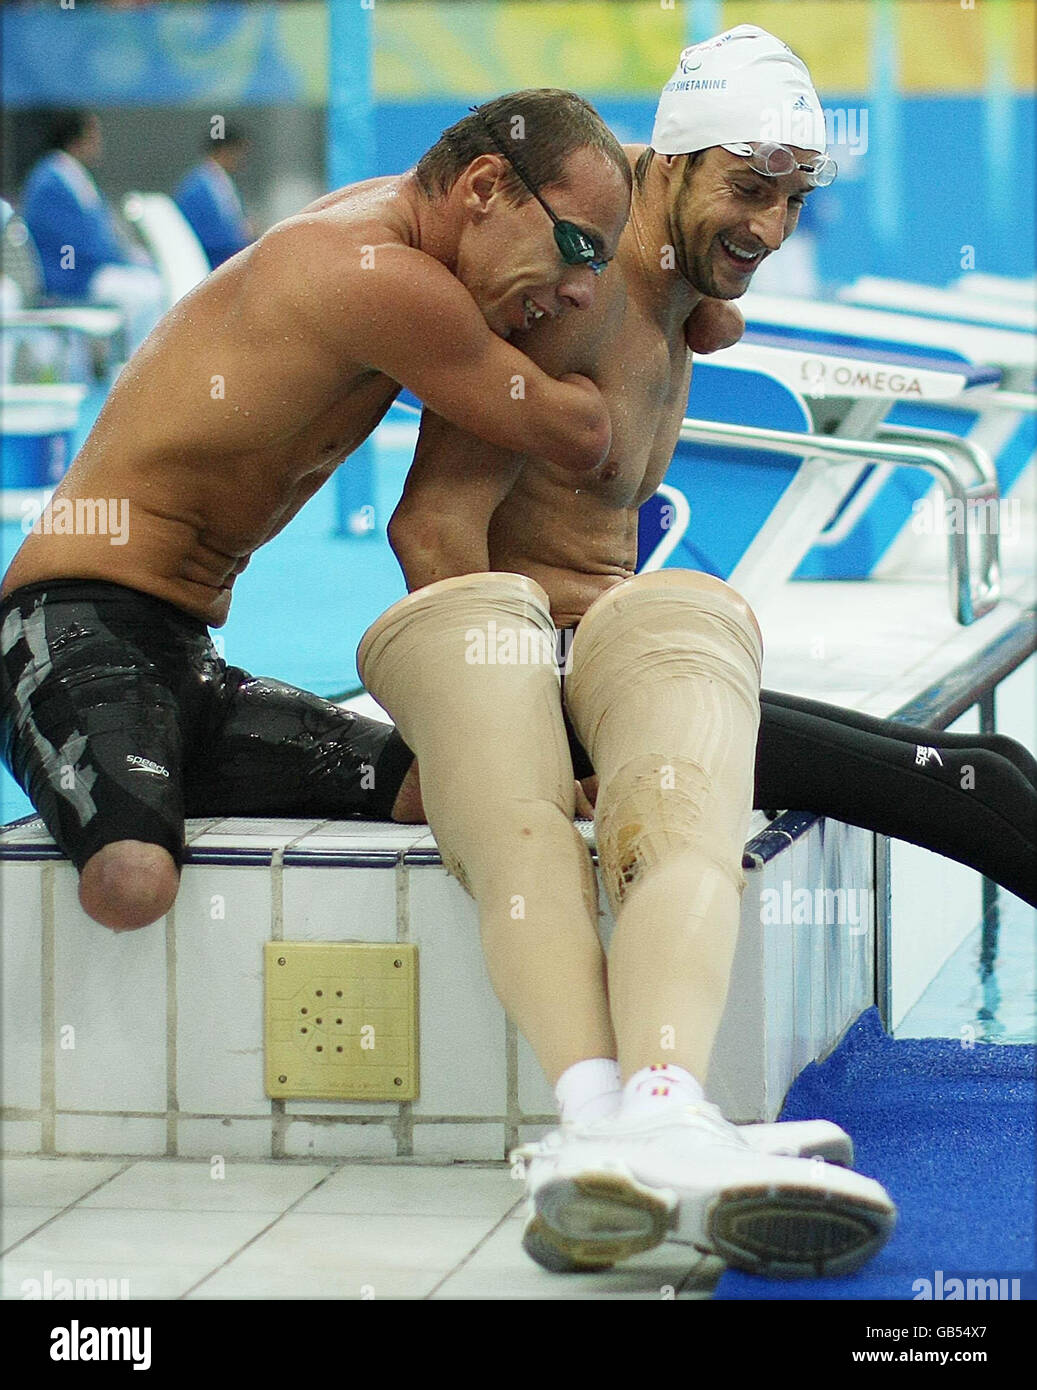 Paralympics - Paralympische Spiele In Peking 2008 - Tag Acht. Schwimmer umarmen sich gegenseitig, nachdem sie im National Acquatic Center in Peking gegeneinander antreten. Stockfoto